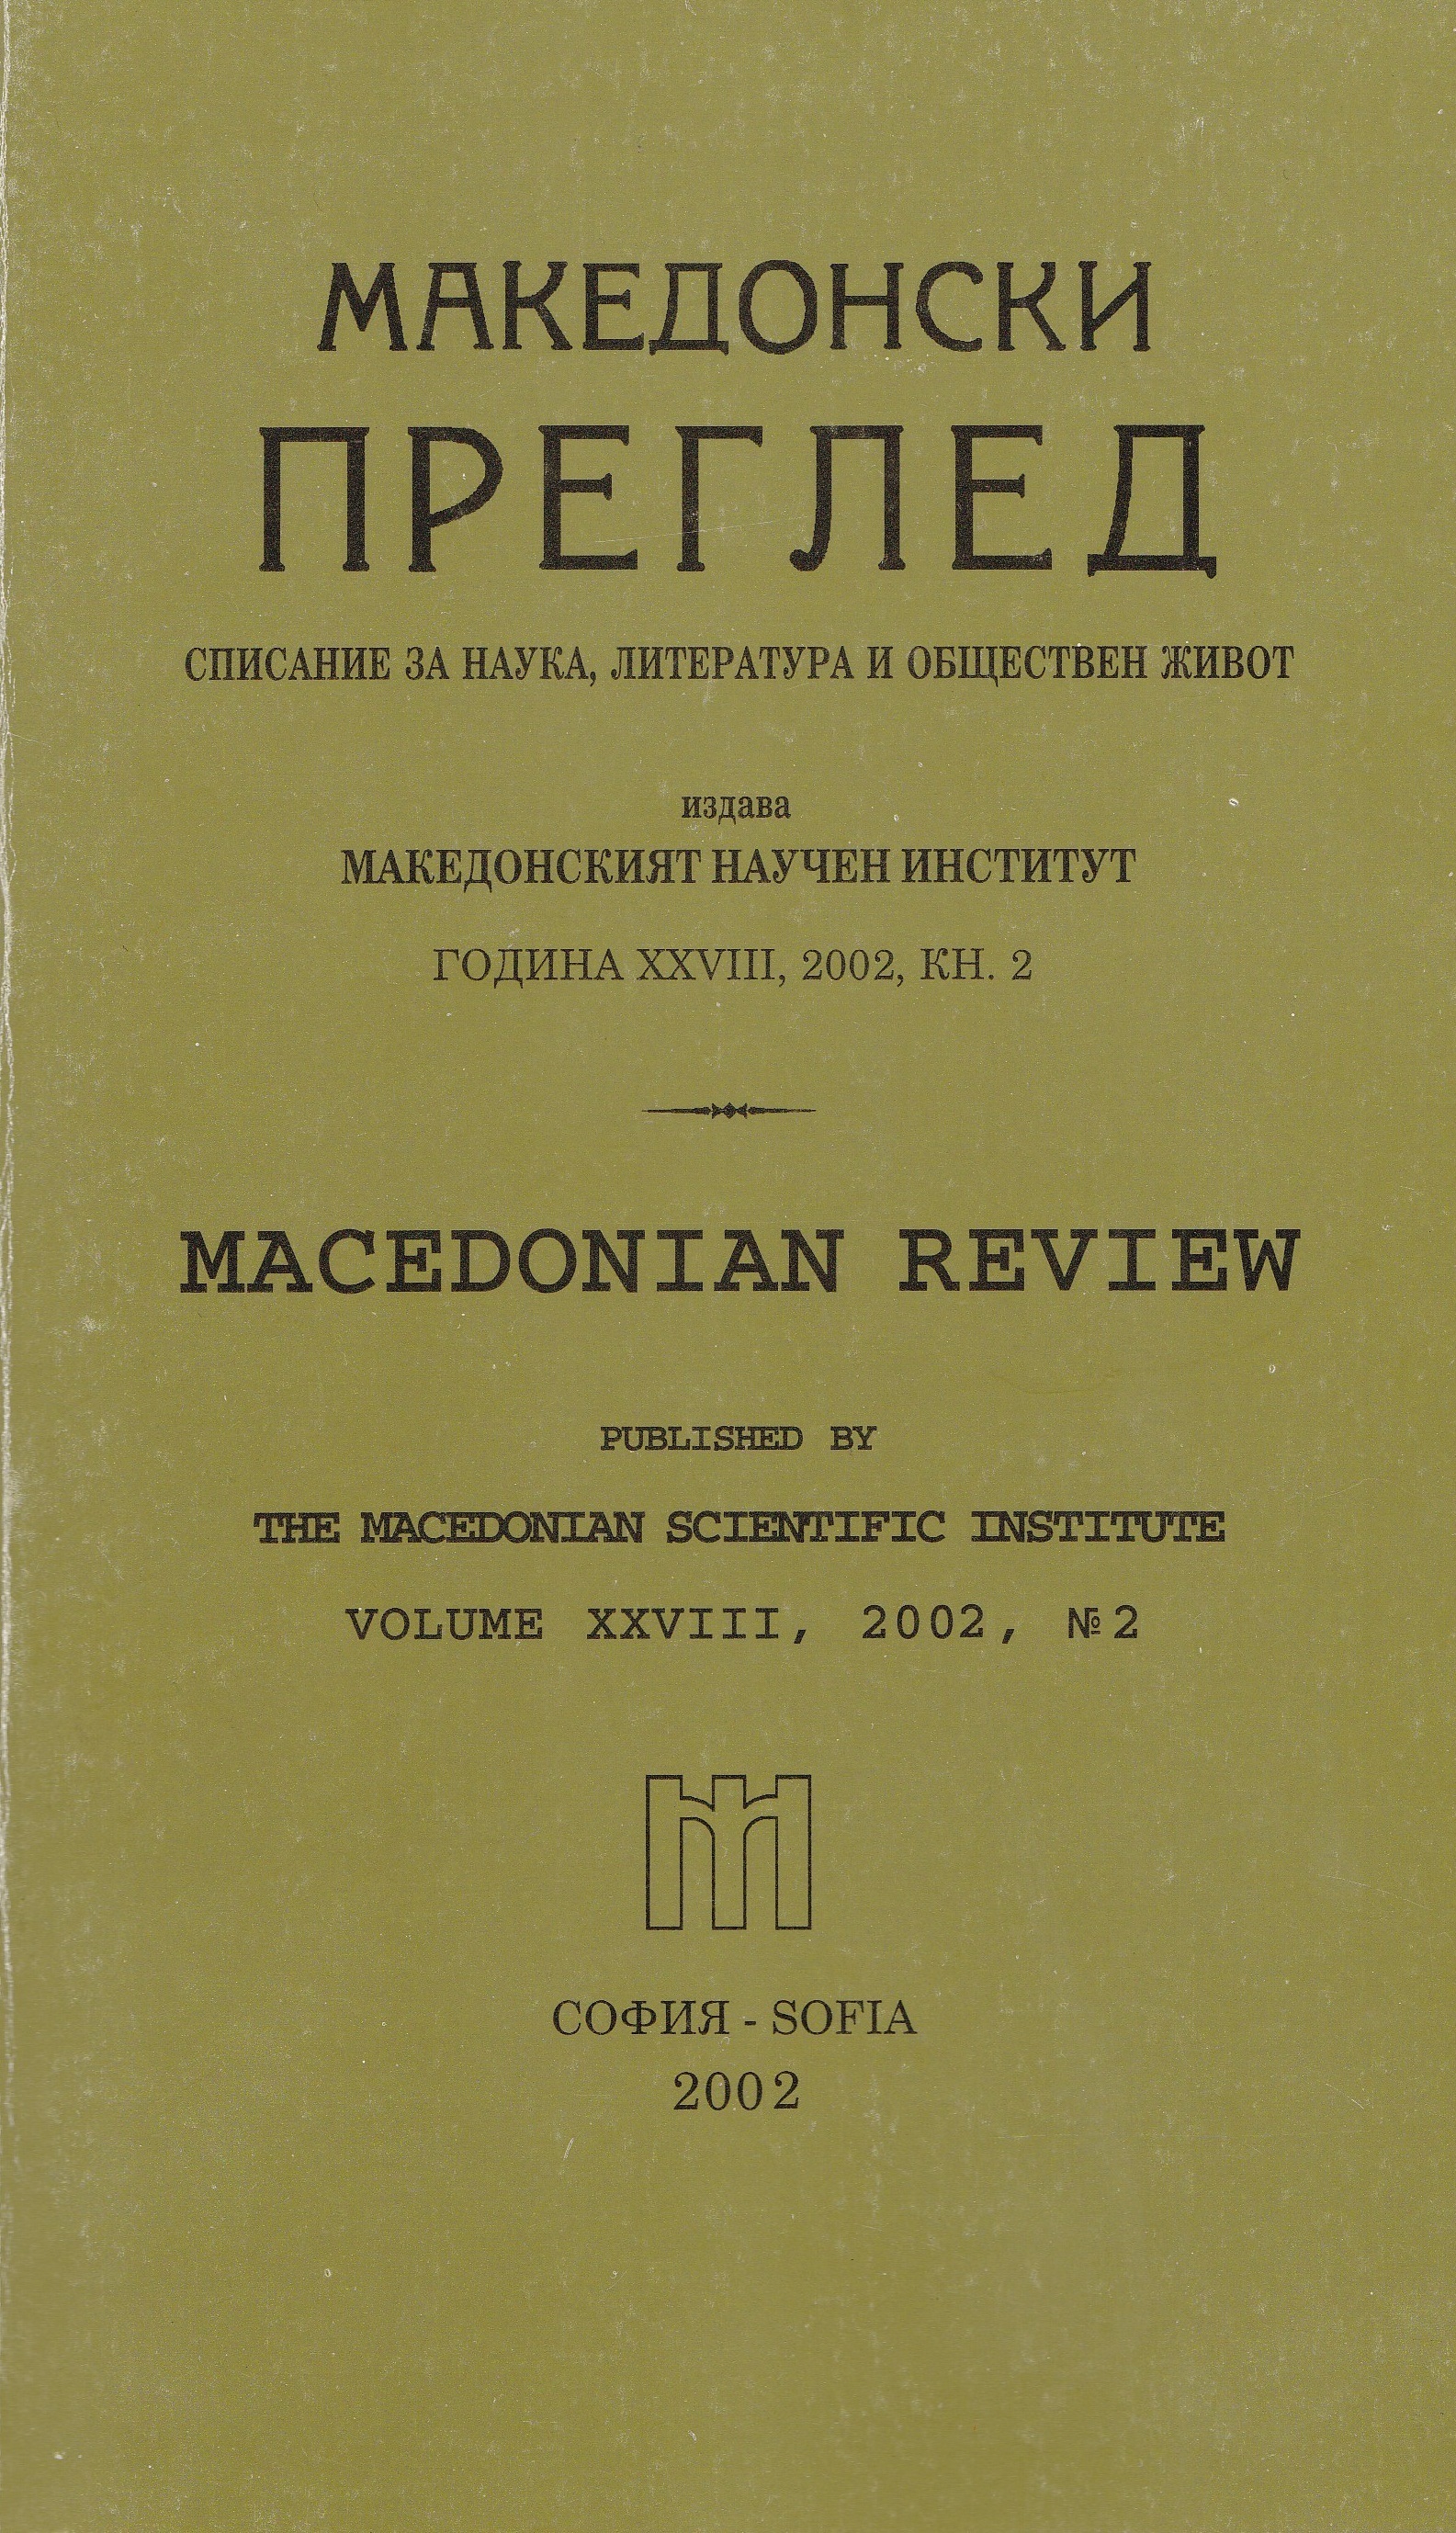 Македонският въпрос през ХХ век в нова гръцка книга